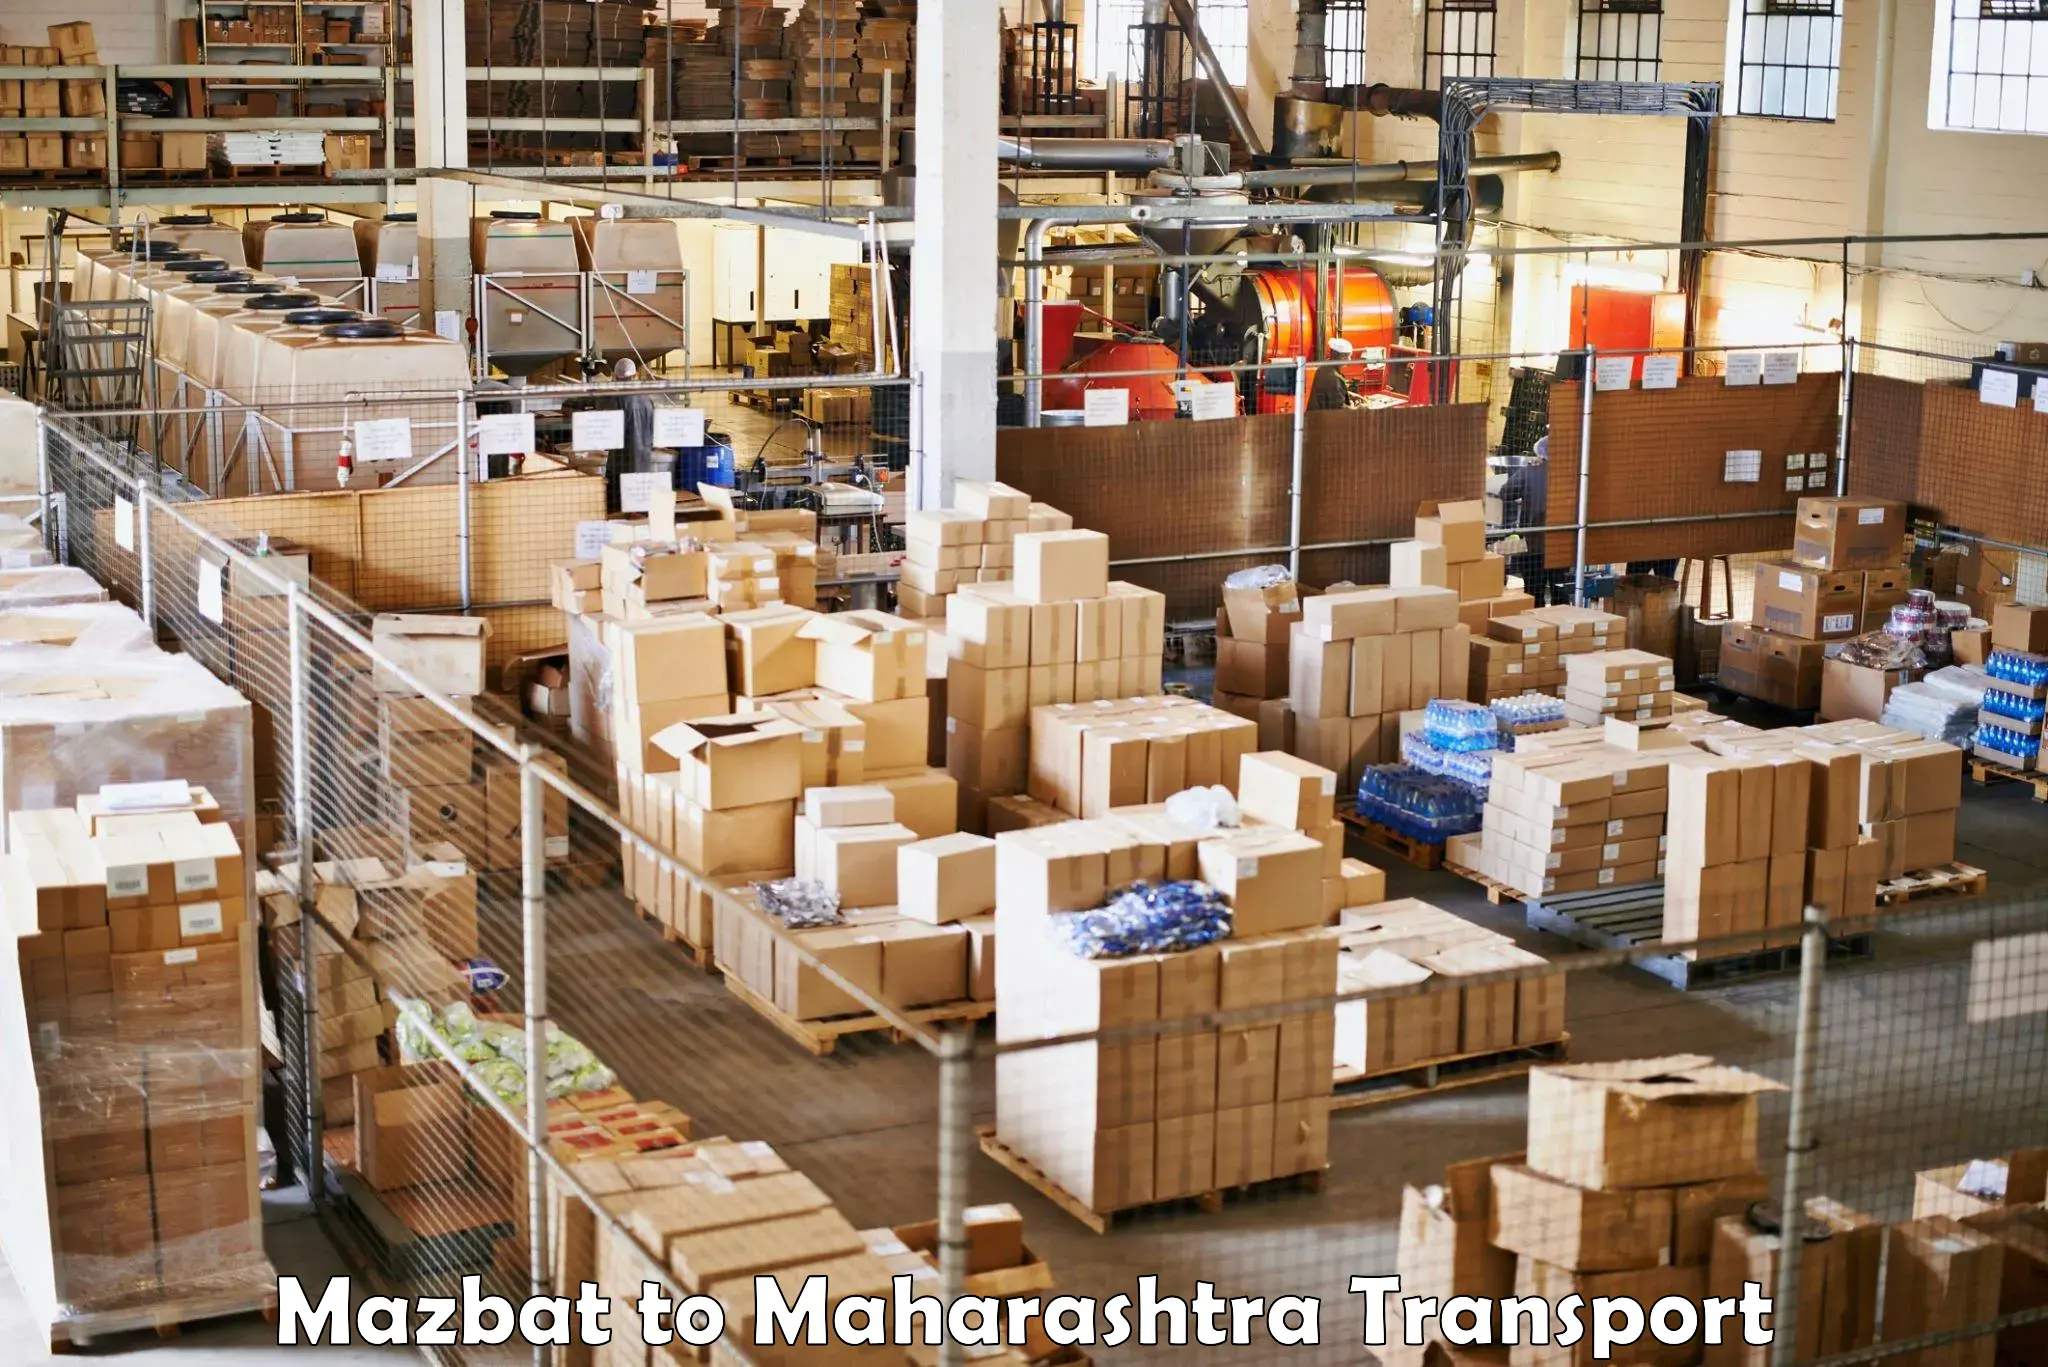 Shipping partner Mazbat to Jalgaon